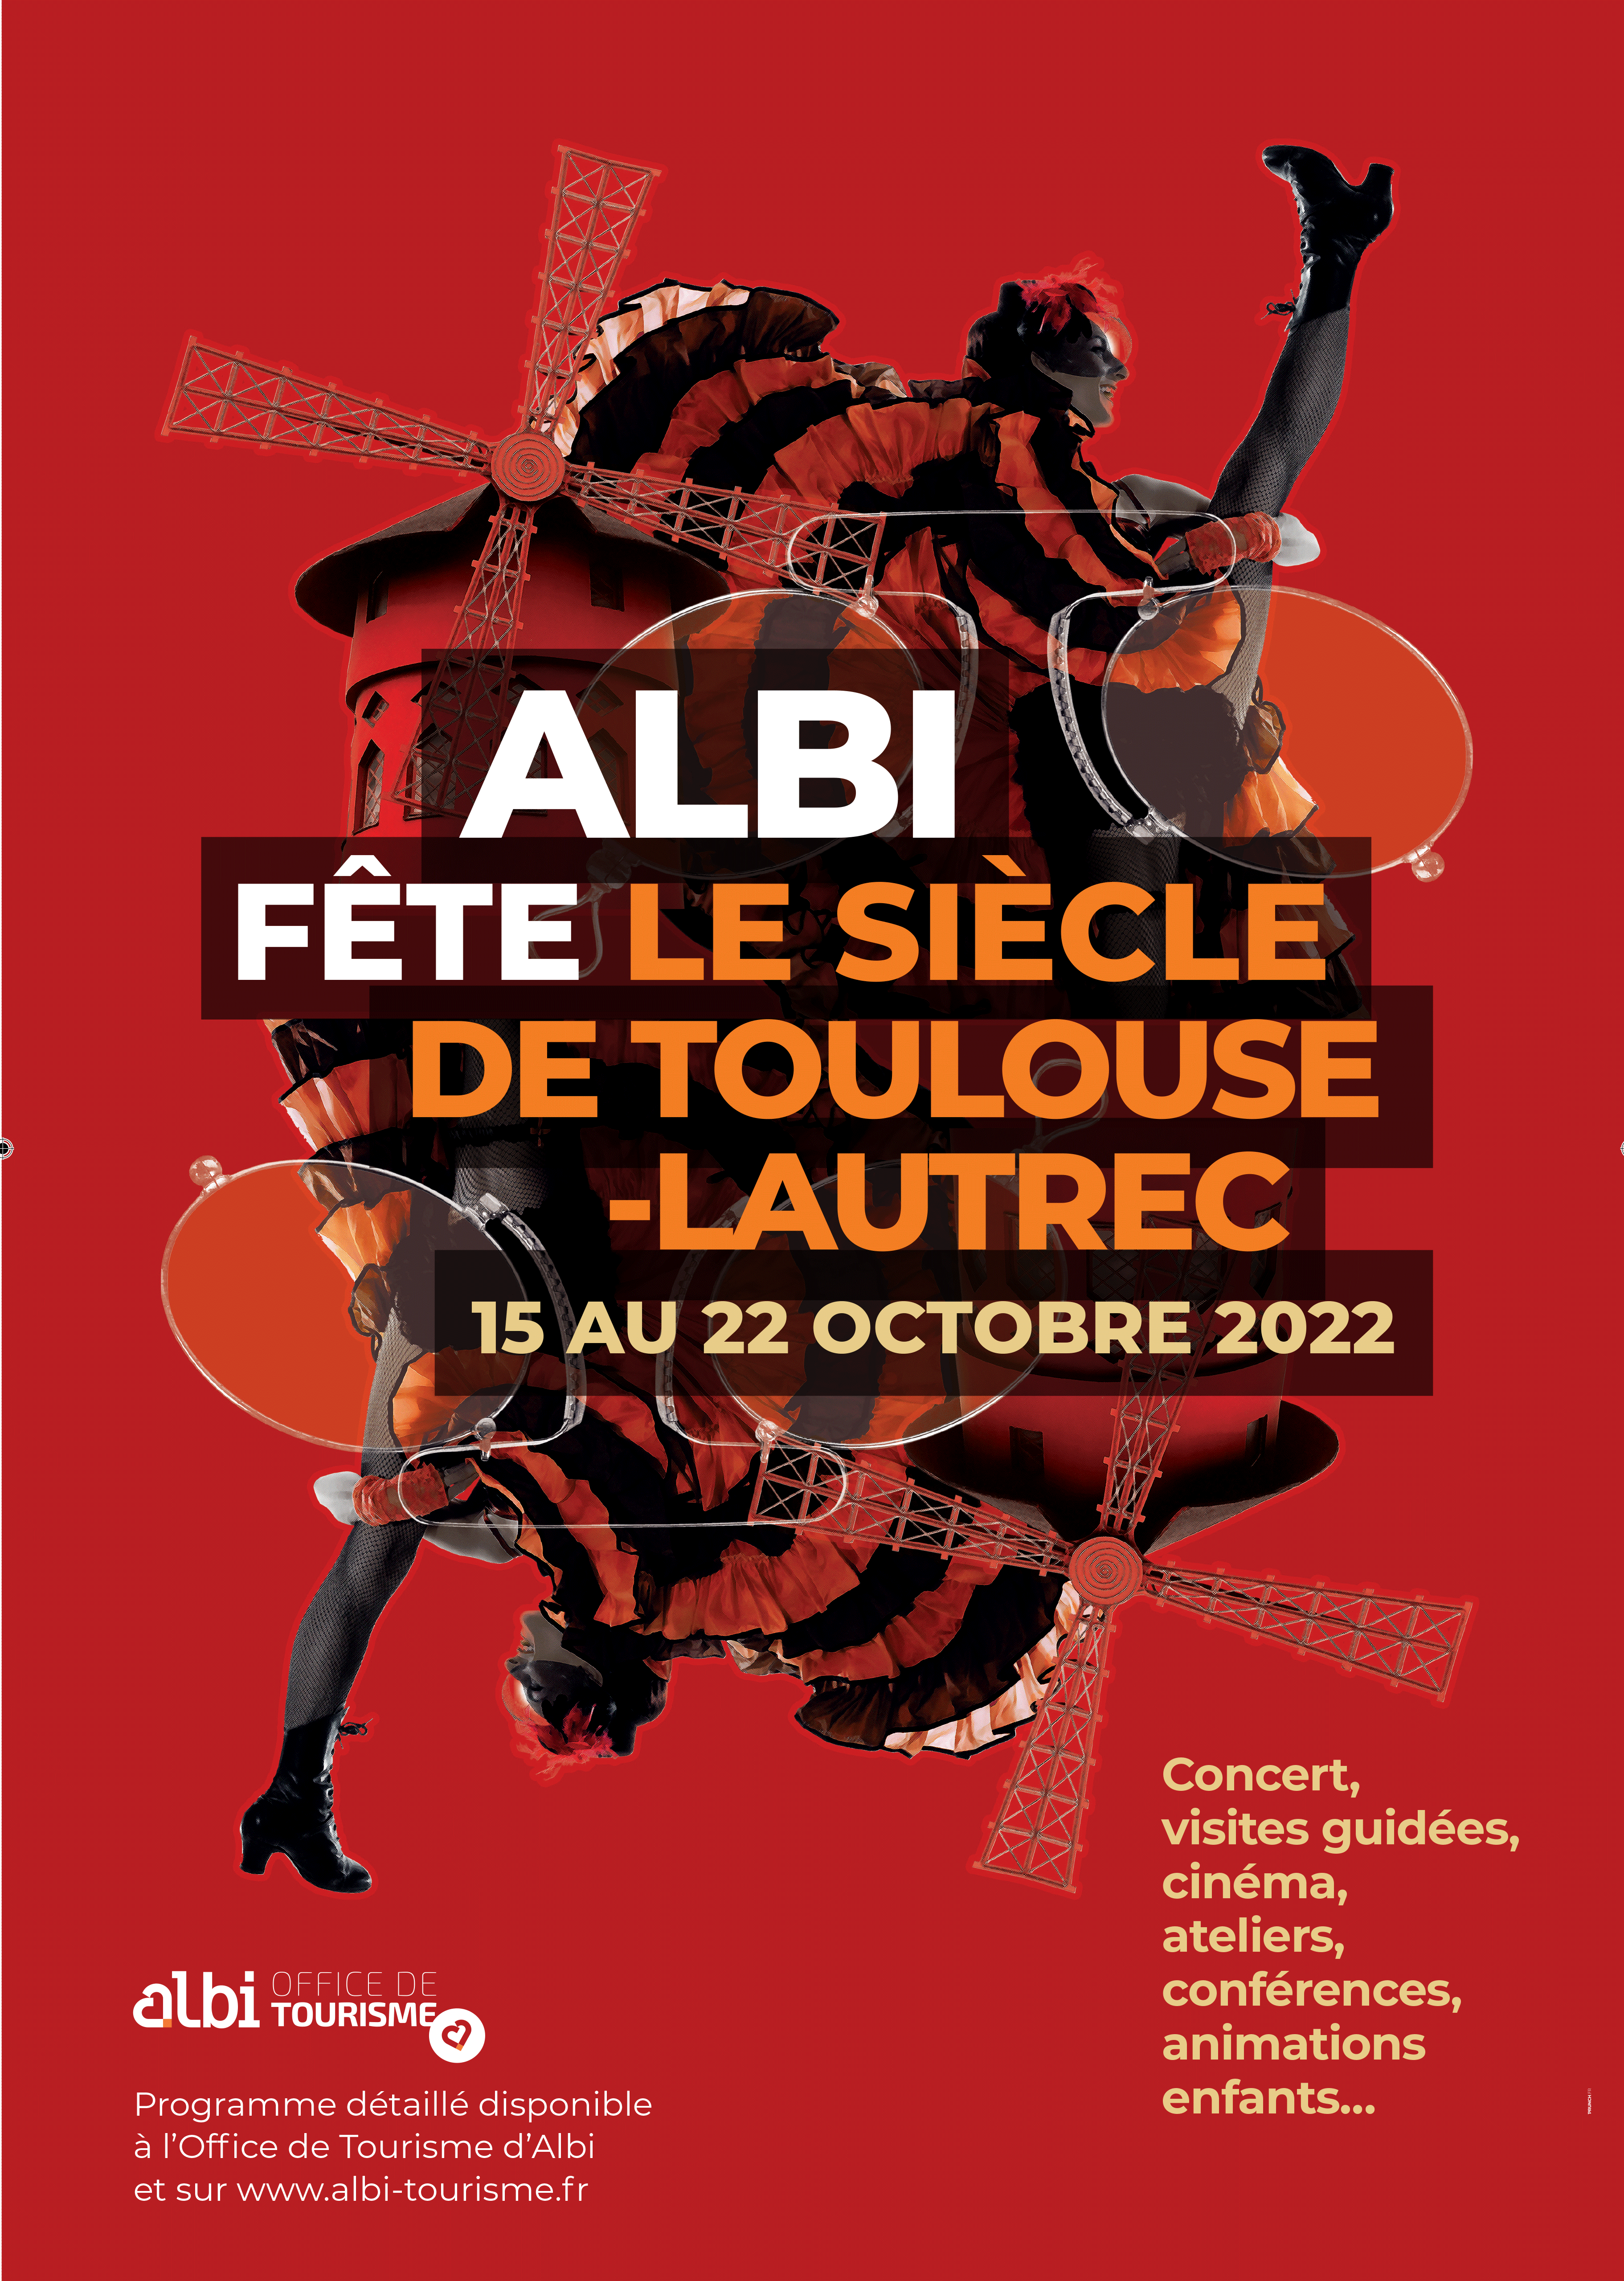 Albi fête le siècle de Toulouse-Lautrec